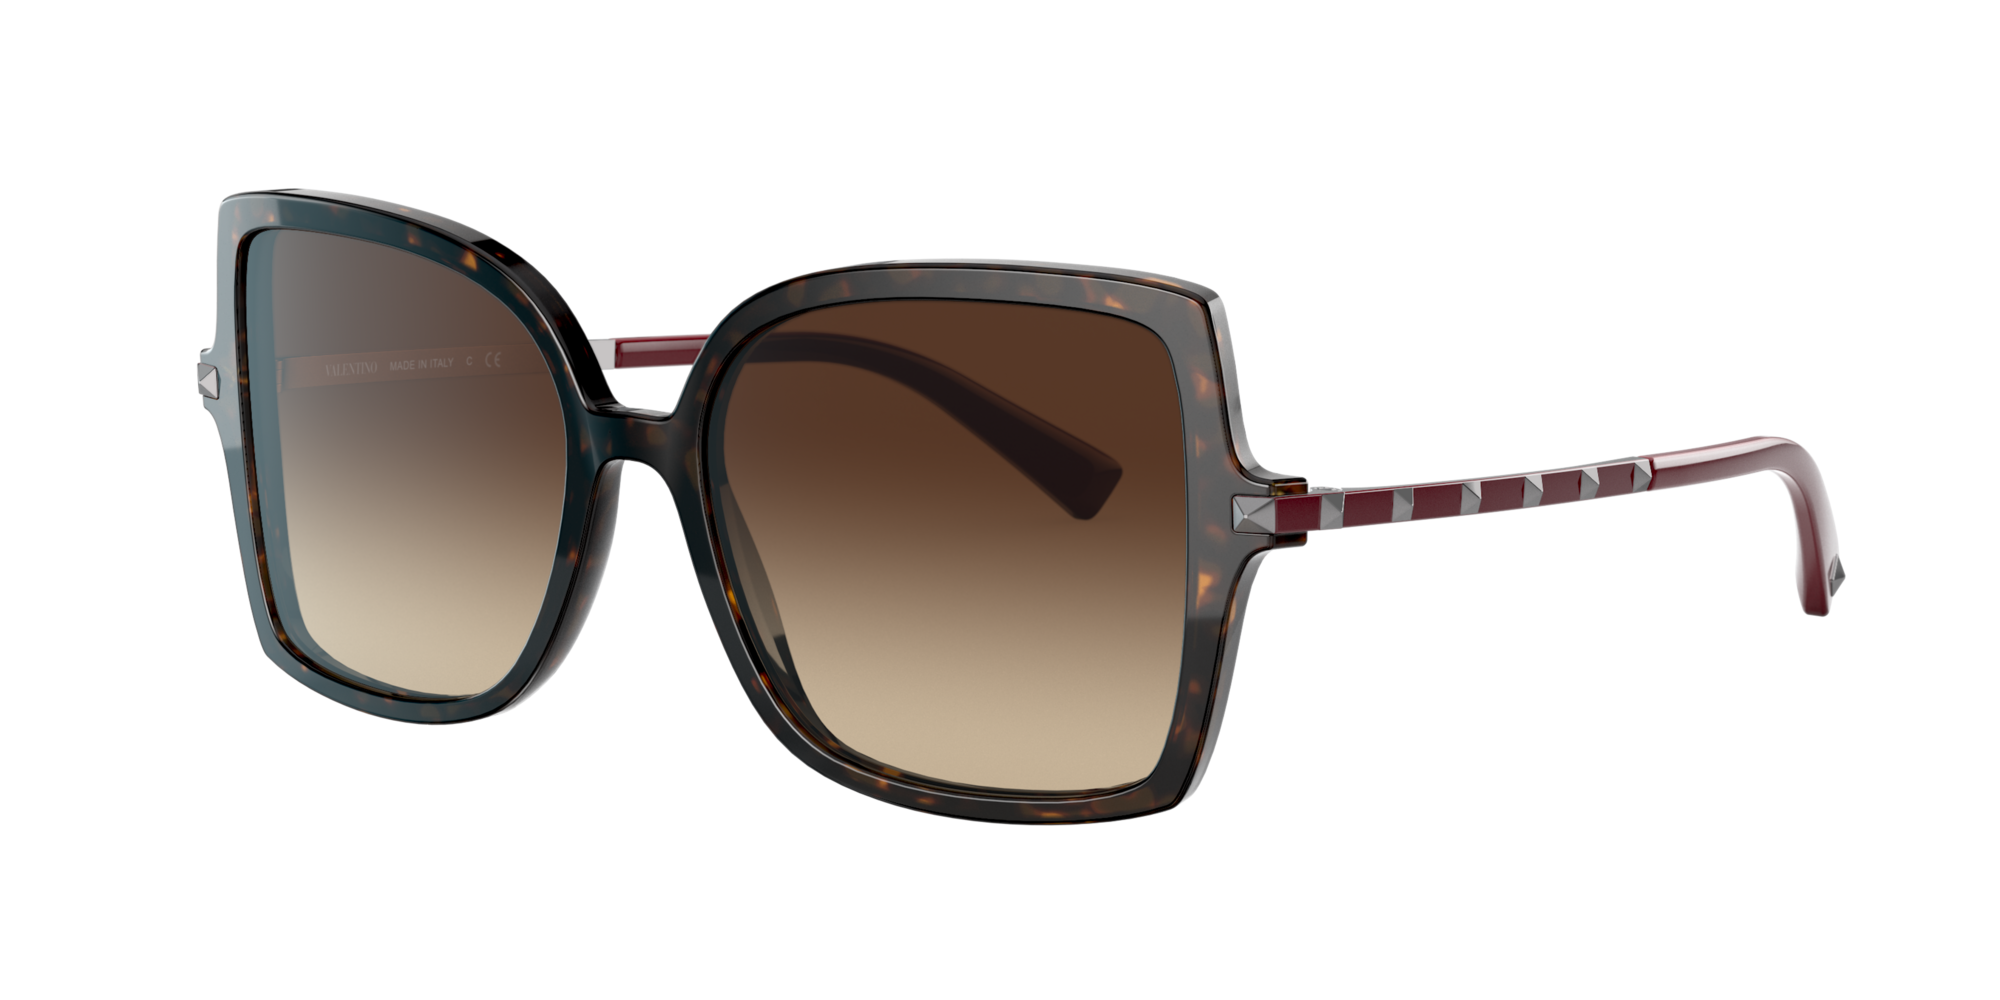 Sunglass Hut Online Store | Sunglasses for Women, Men & Kids